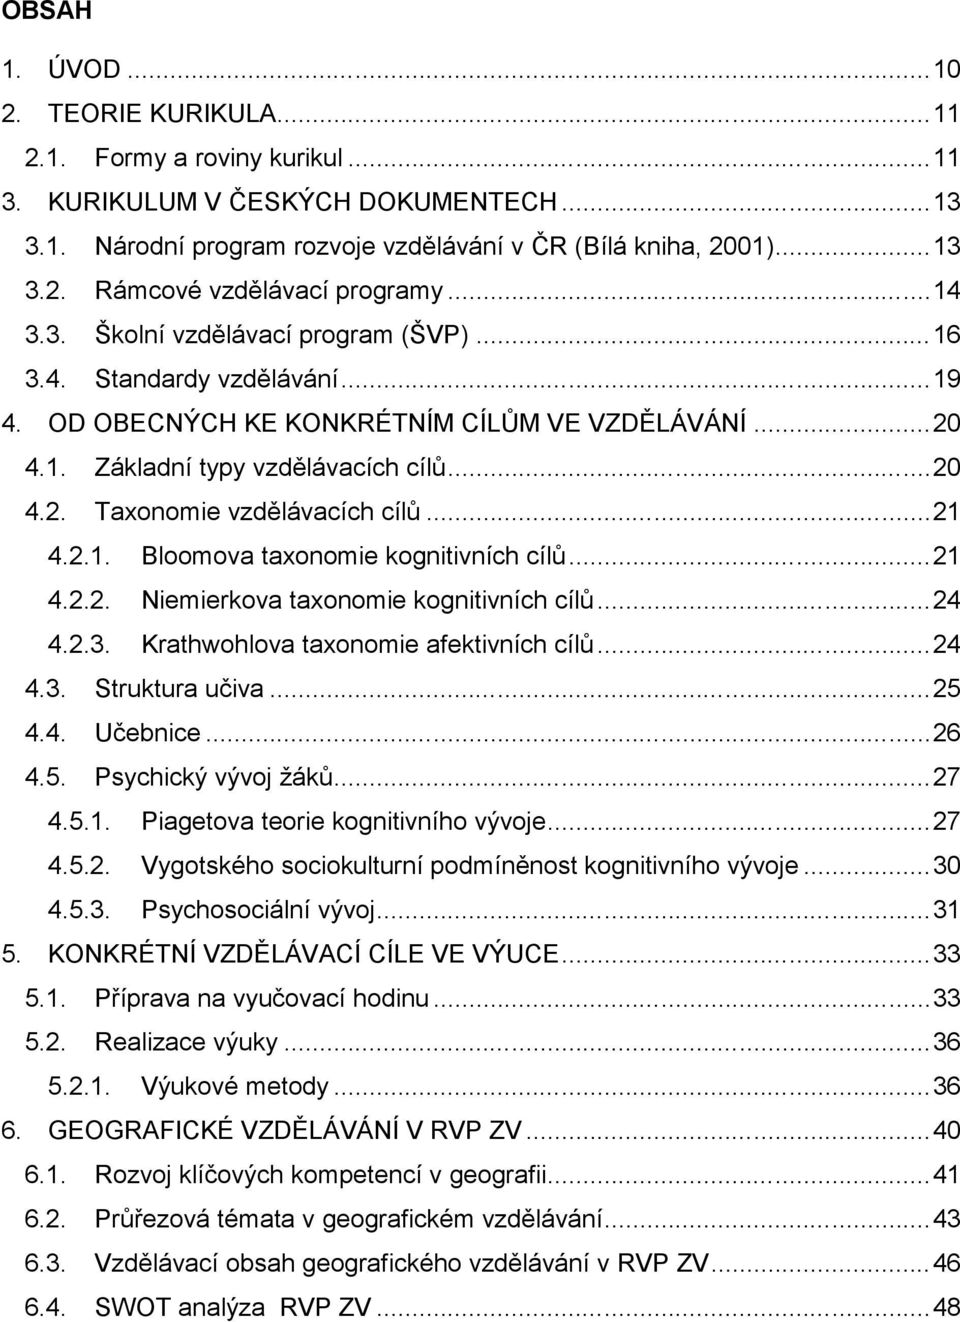 ..21 4.2.1. Bloomova taxonomie kognitivních cílů...21 4.2.2. Niemierkova taxonomie kognitivních cílů...24 4.2.3. Krathwohlova taxonomie afektivních cílů...24 4.3. Struktura učiva...25 4.4. Učebnice.